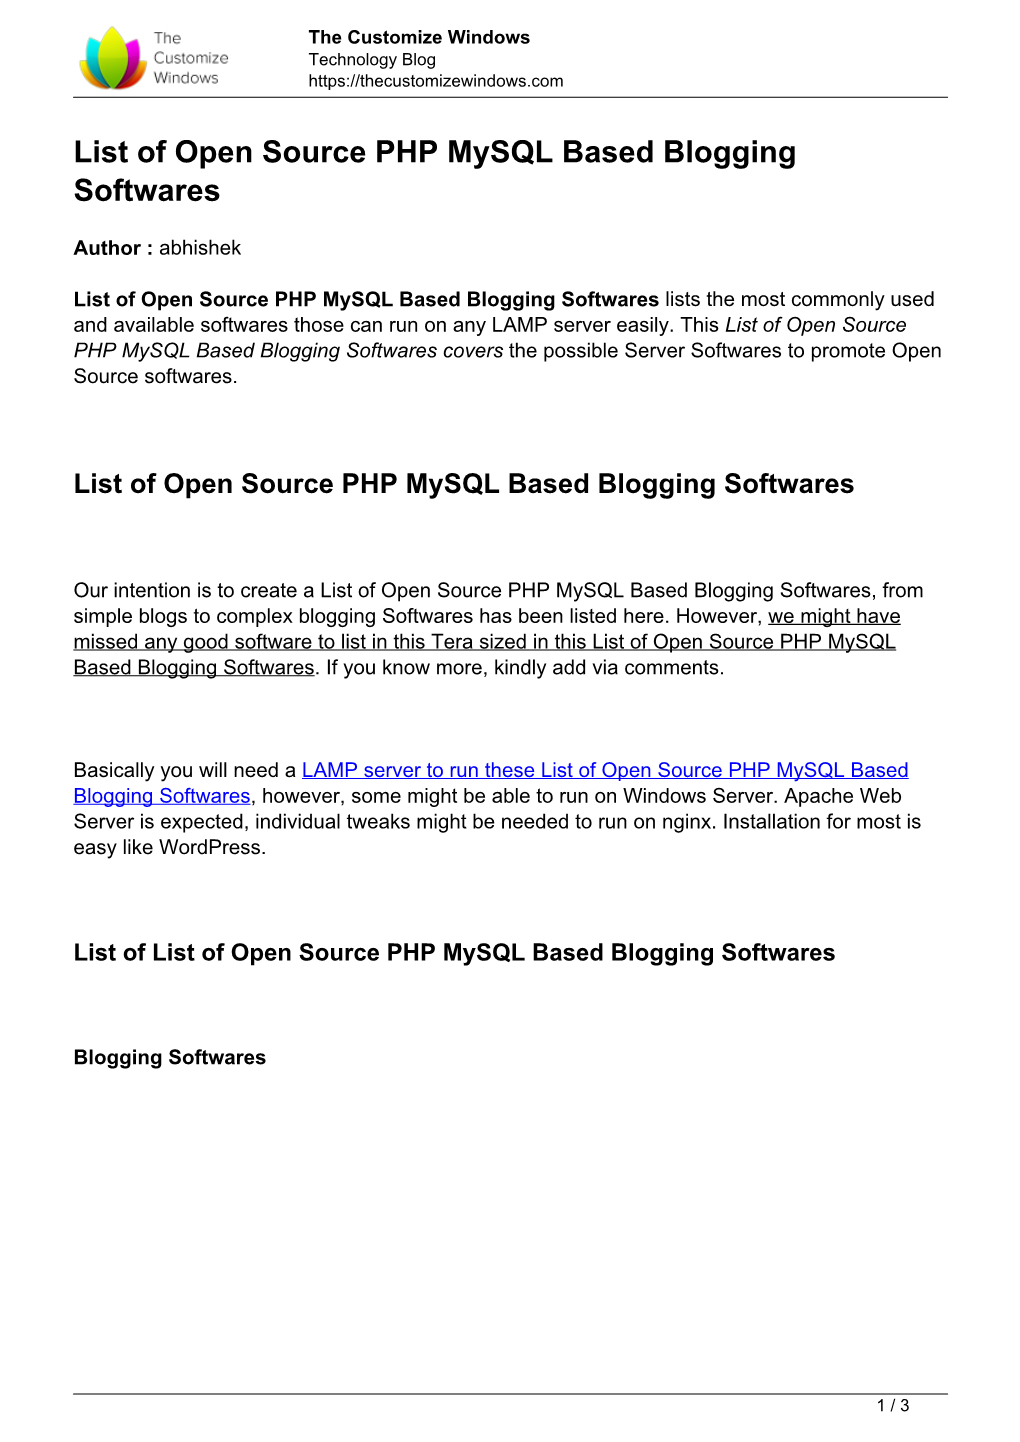 List of Open Source PHP Mysql Based Blogging Softwares